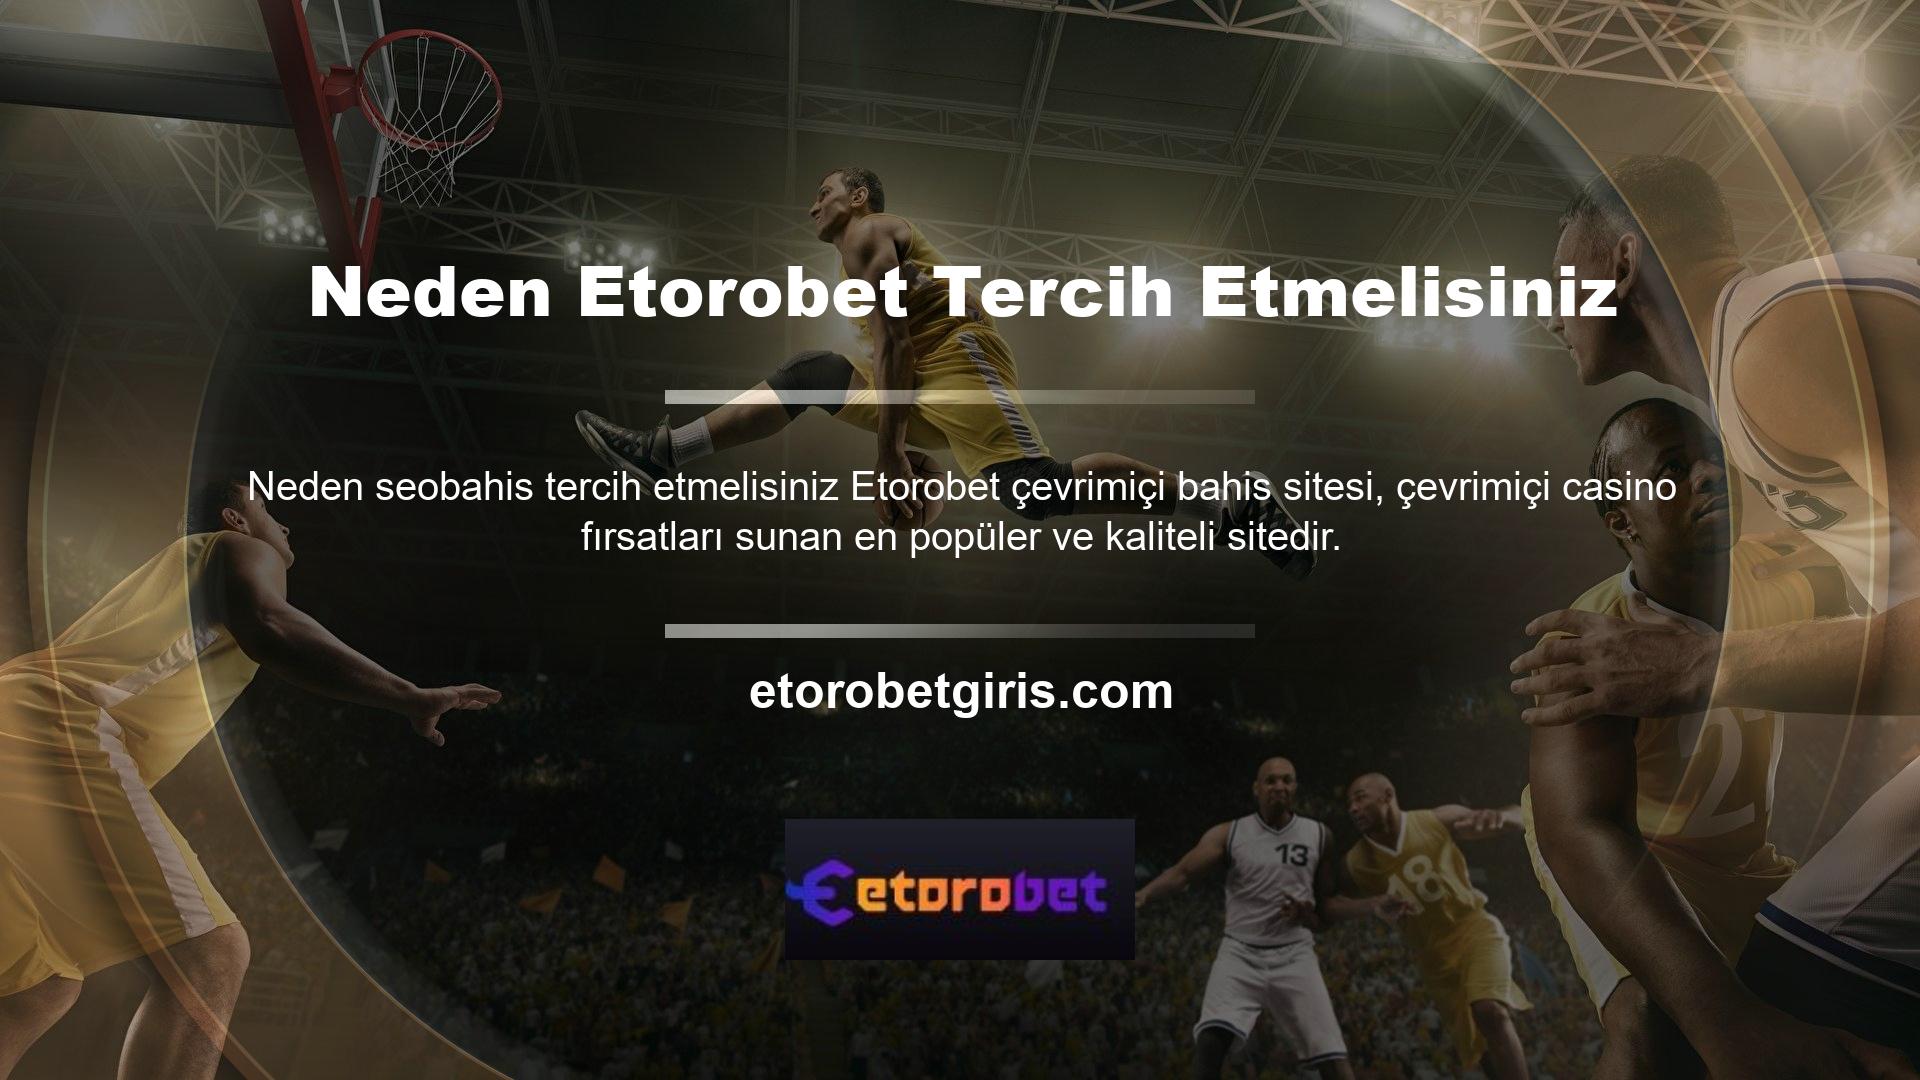 Etorobet web sitesi bahislerinizi oynamanıza ve hızlı bir şekilde kar elde etmenize olanak sağlar